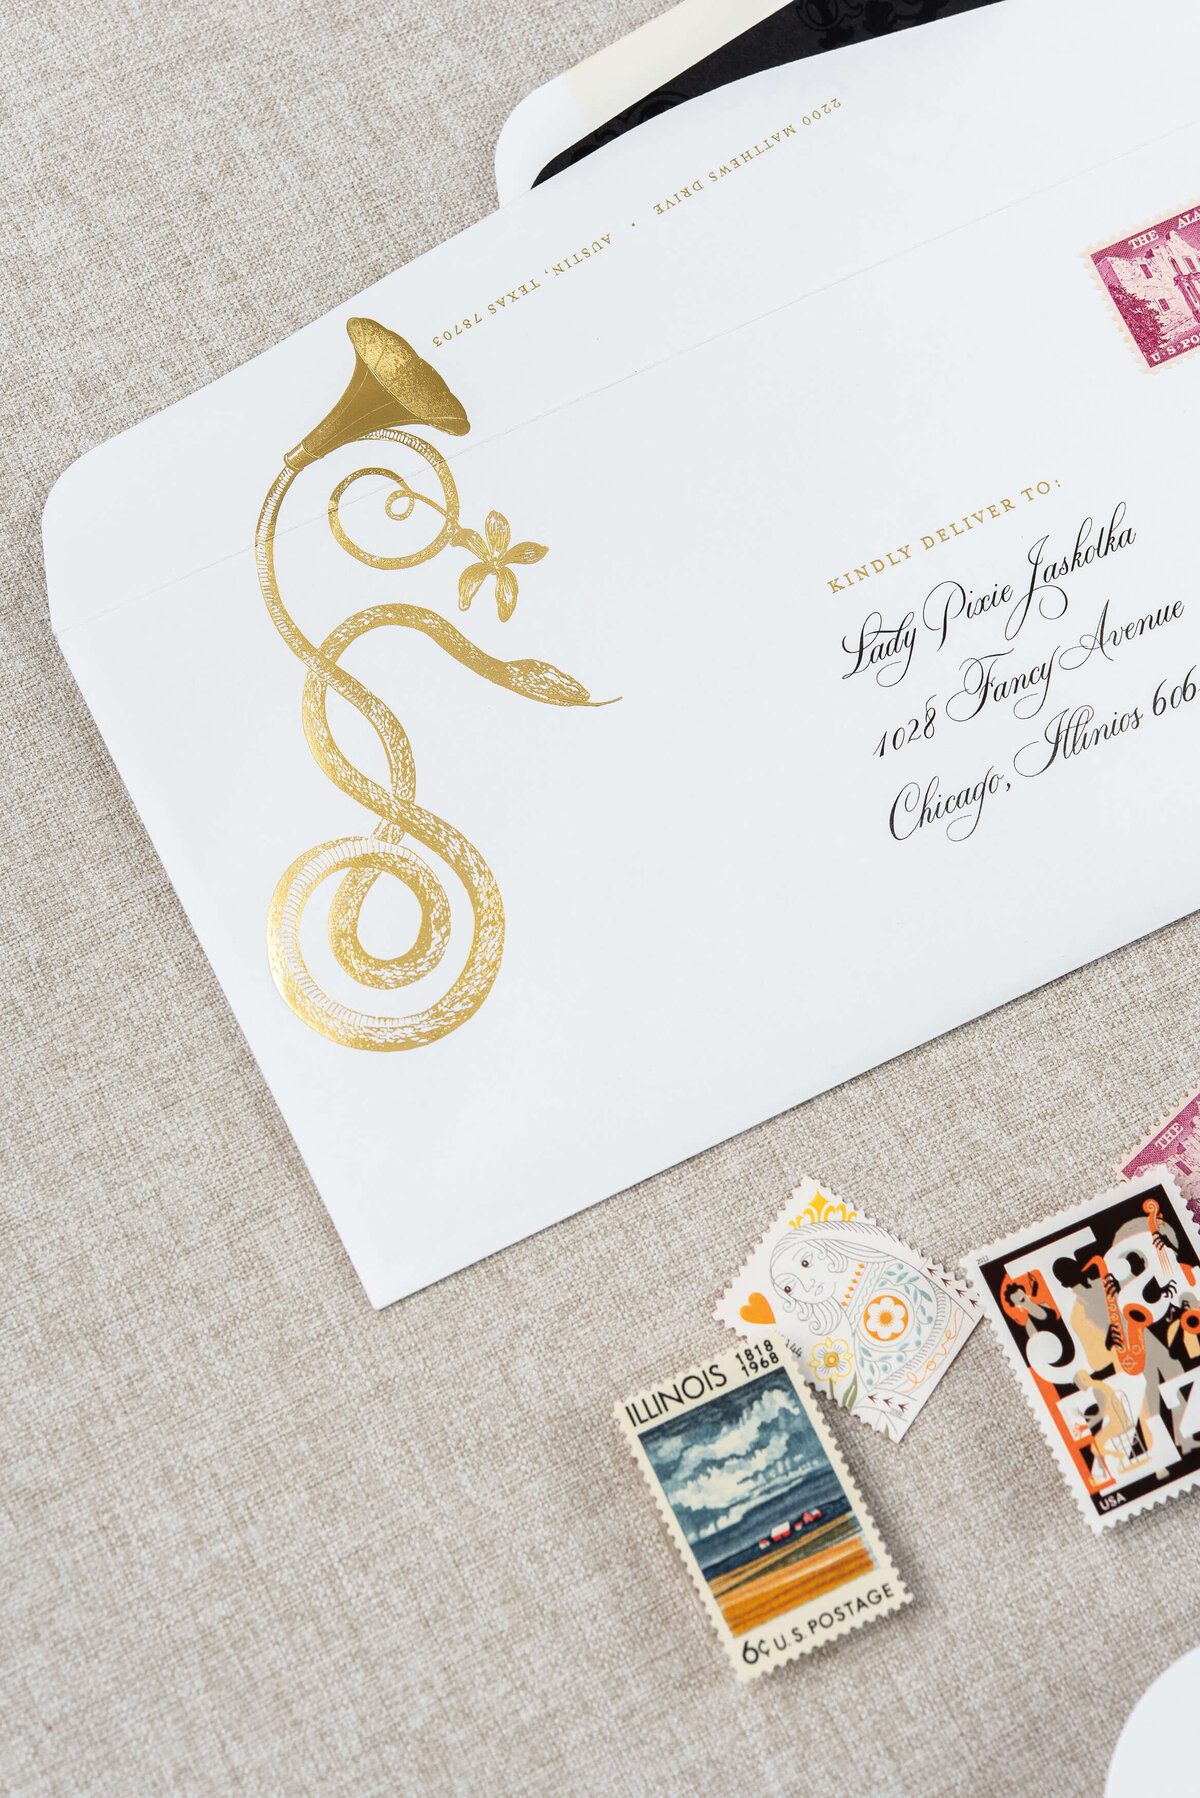 gold-foil-snakeskin-wedding-invitations-Chicago-Athletic-Association-Fig-2-Design